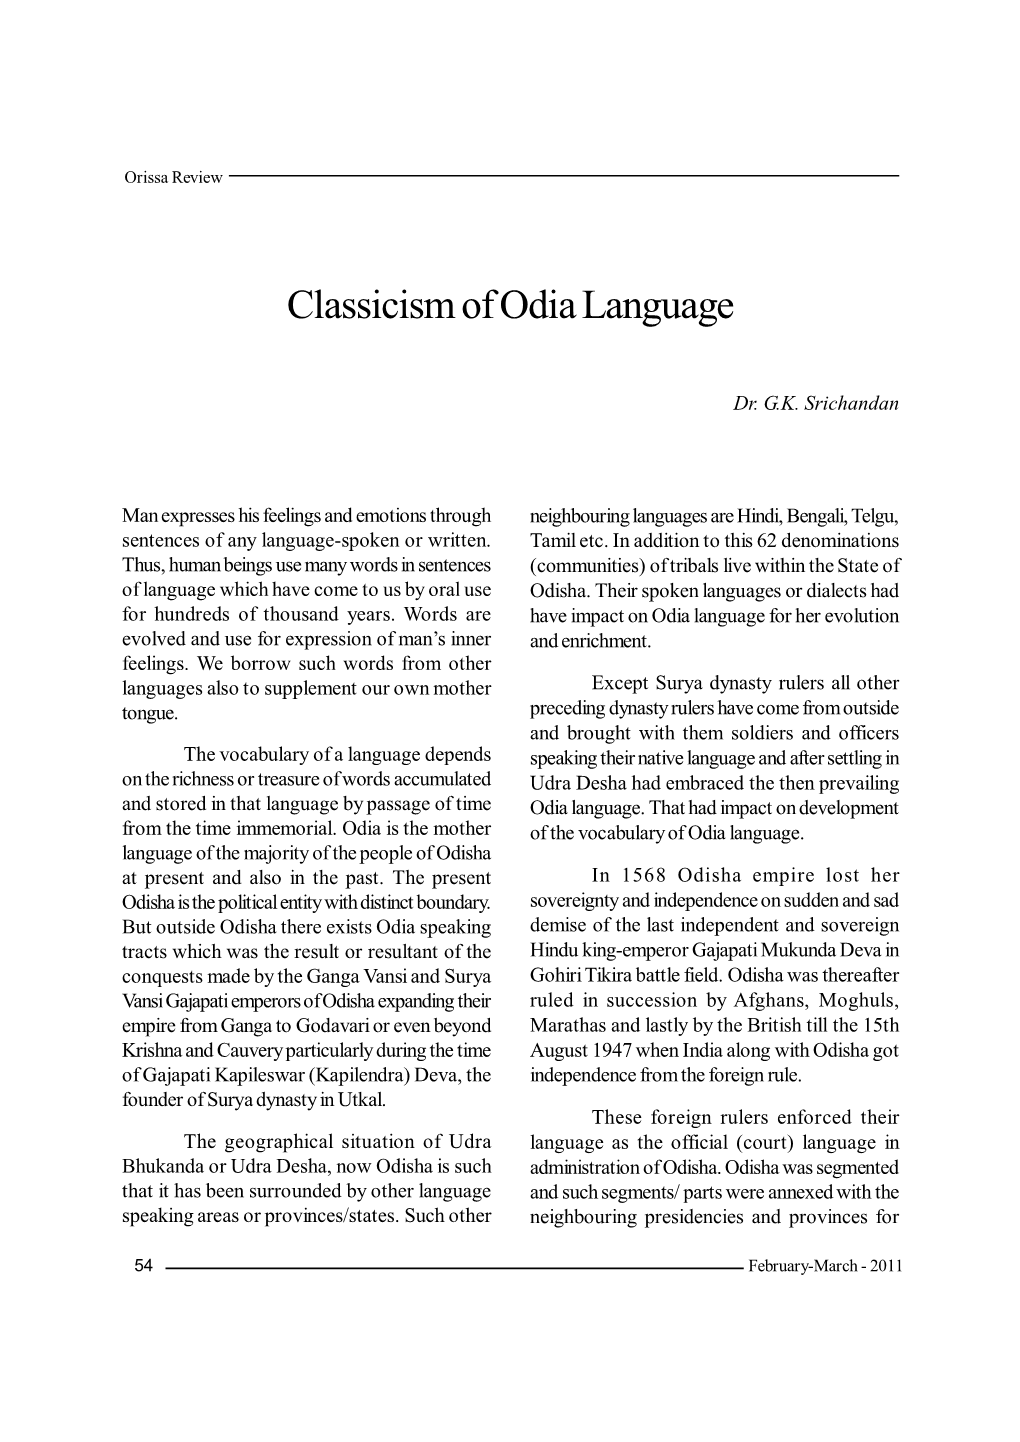 Classicism of Odia Language